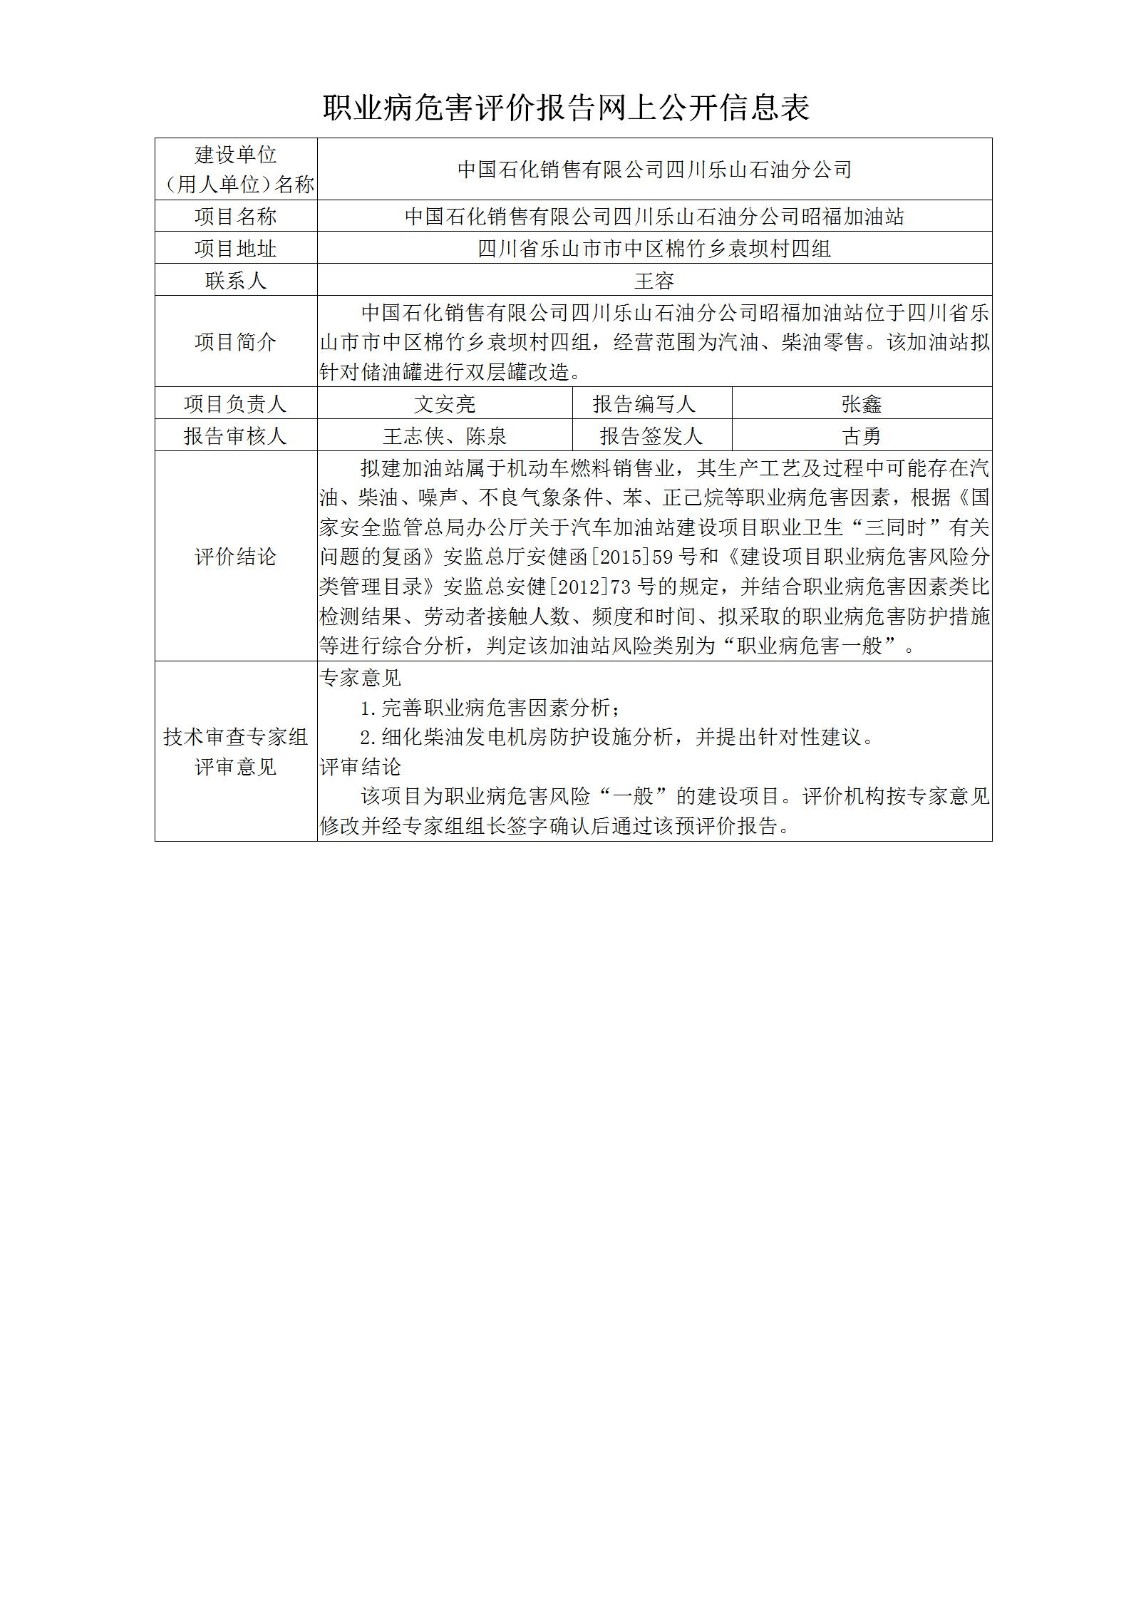 中国石化销售有限公司四川乐山石油分公司昭福加油站职业病危害预评价